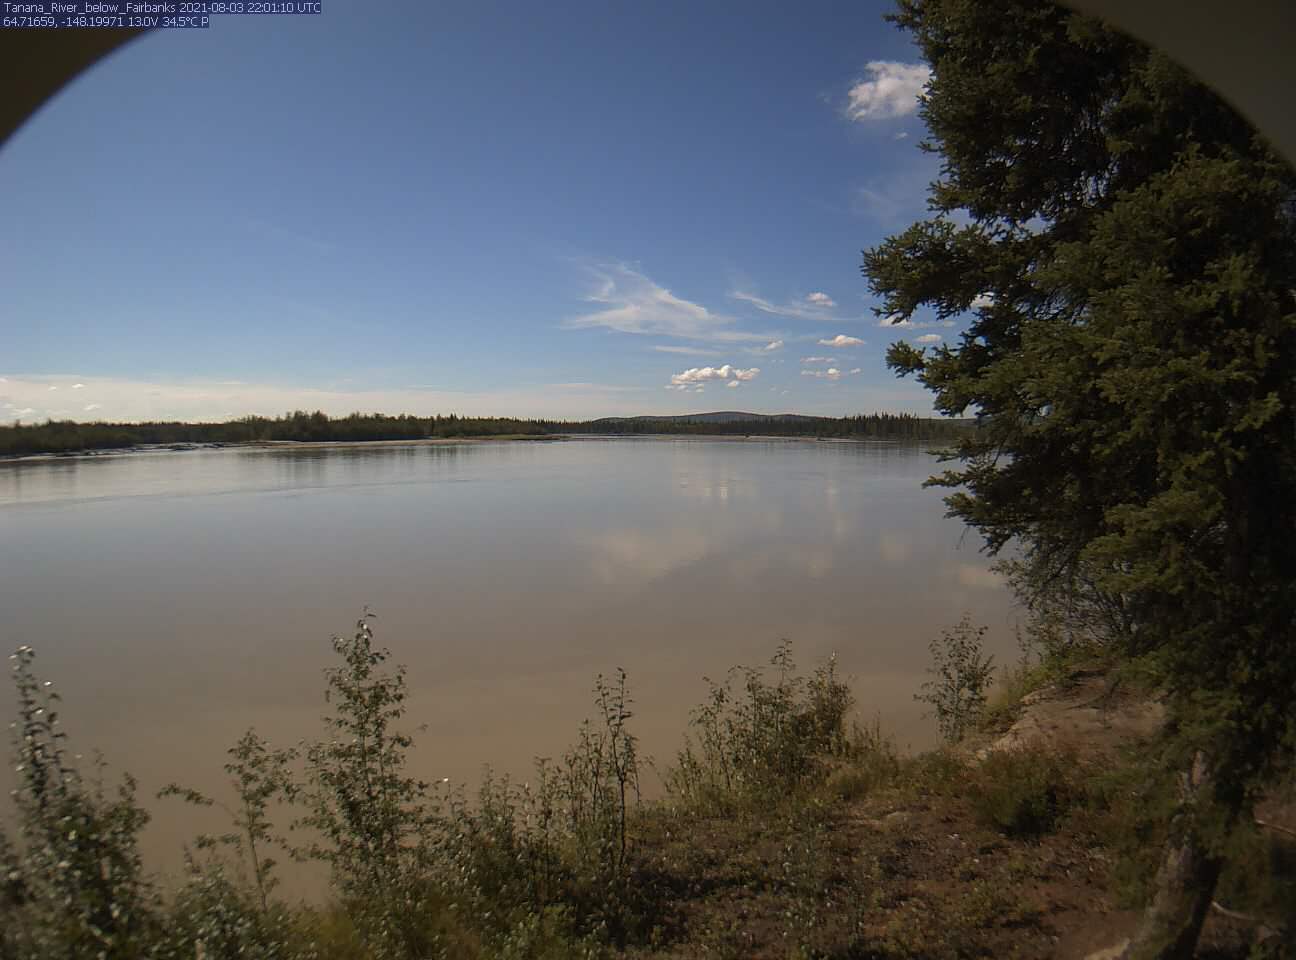 Tanana_River_below_Fairbanks_20210803220111.jpg